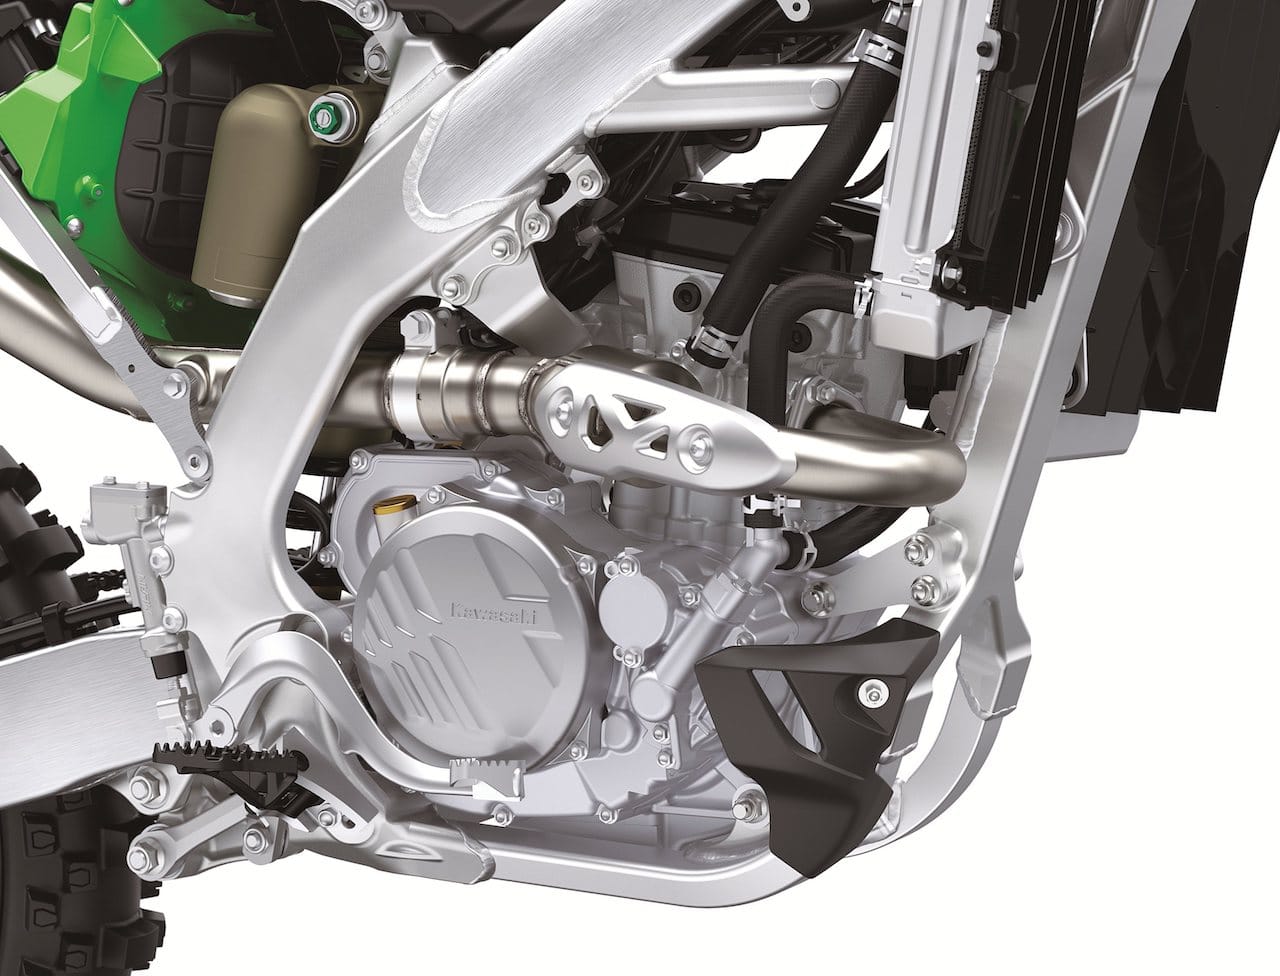 2023 Kawasaki KX250 engine